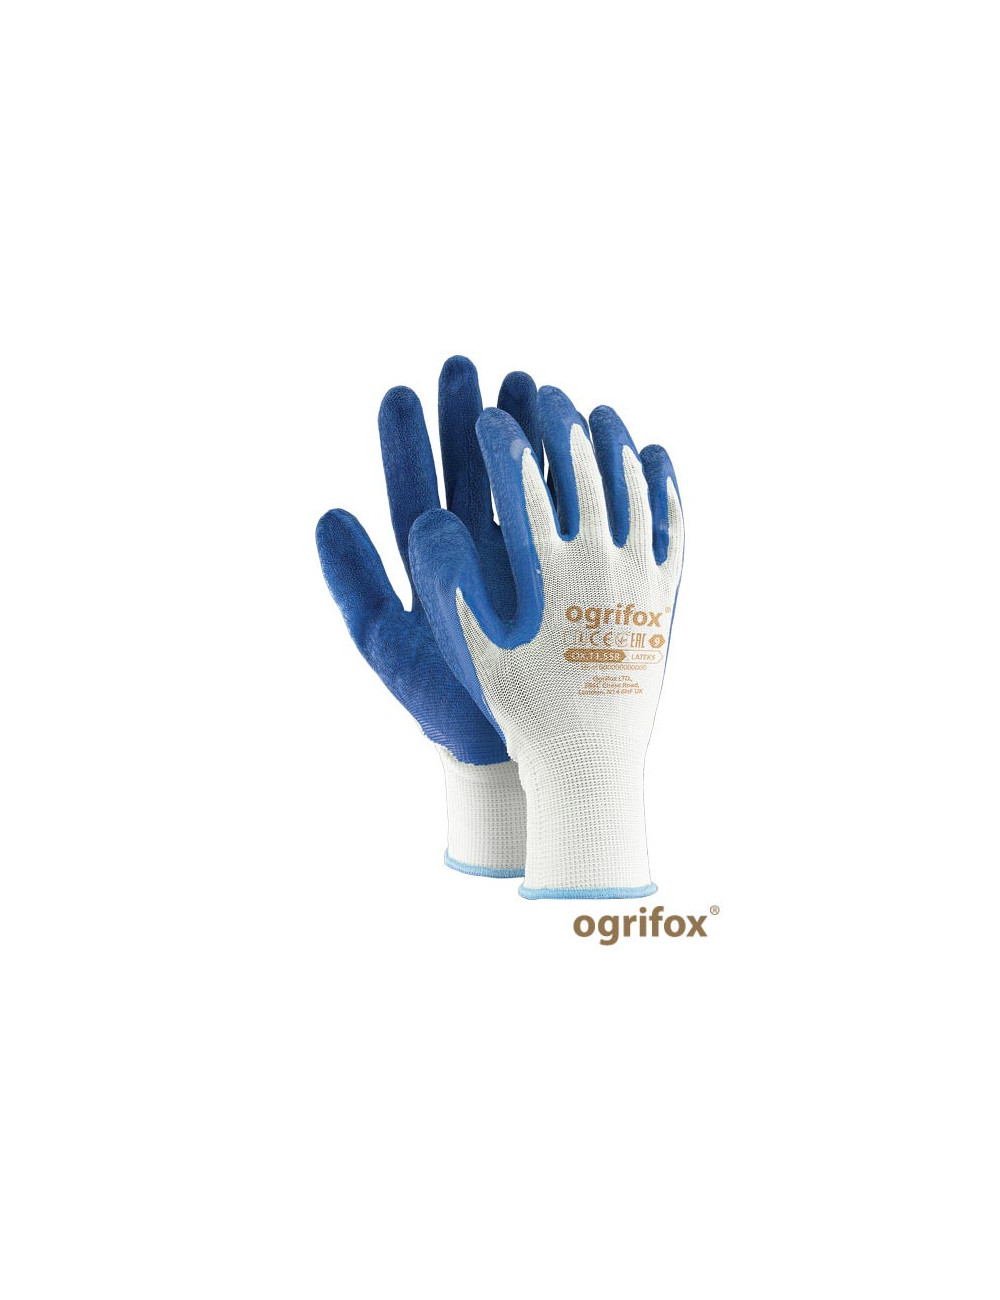 Rękawice ochronne ox.11.558 lateks ox-lateks wn biało-niebieski Ogrifox